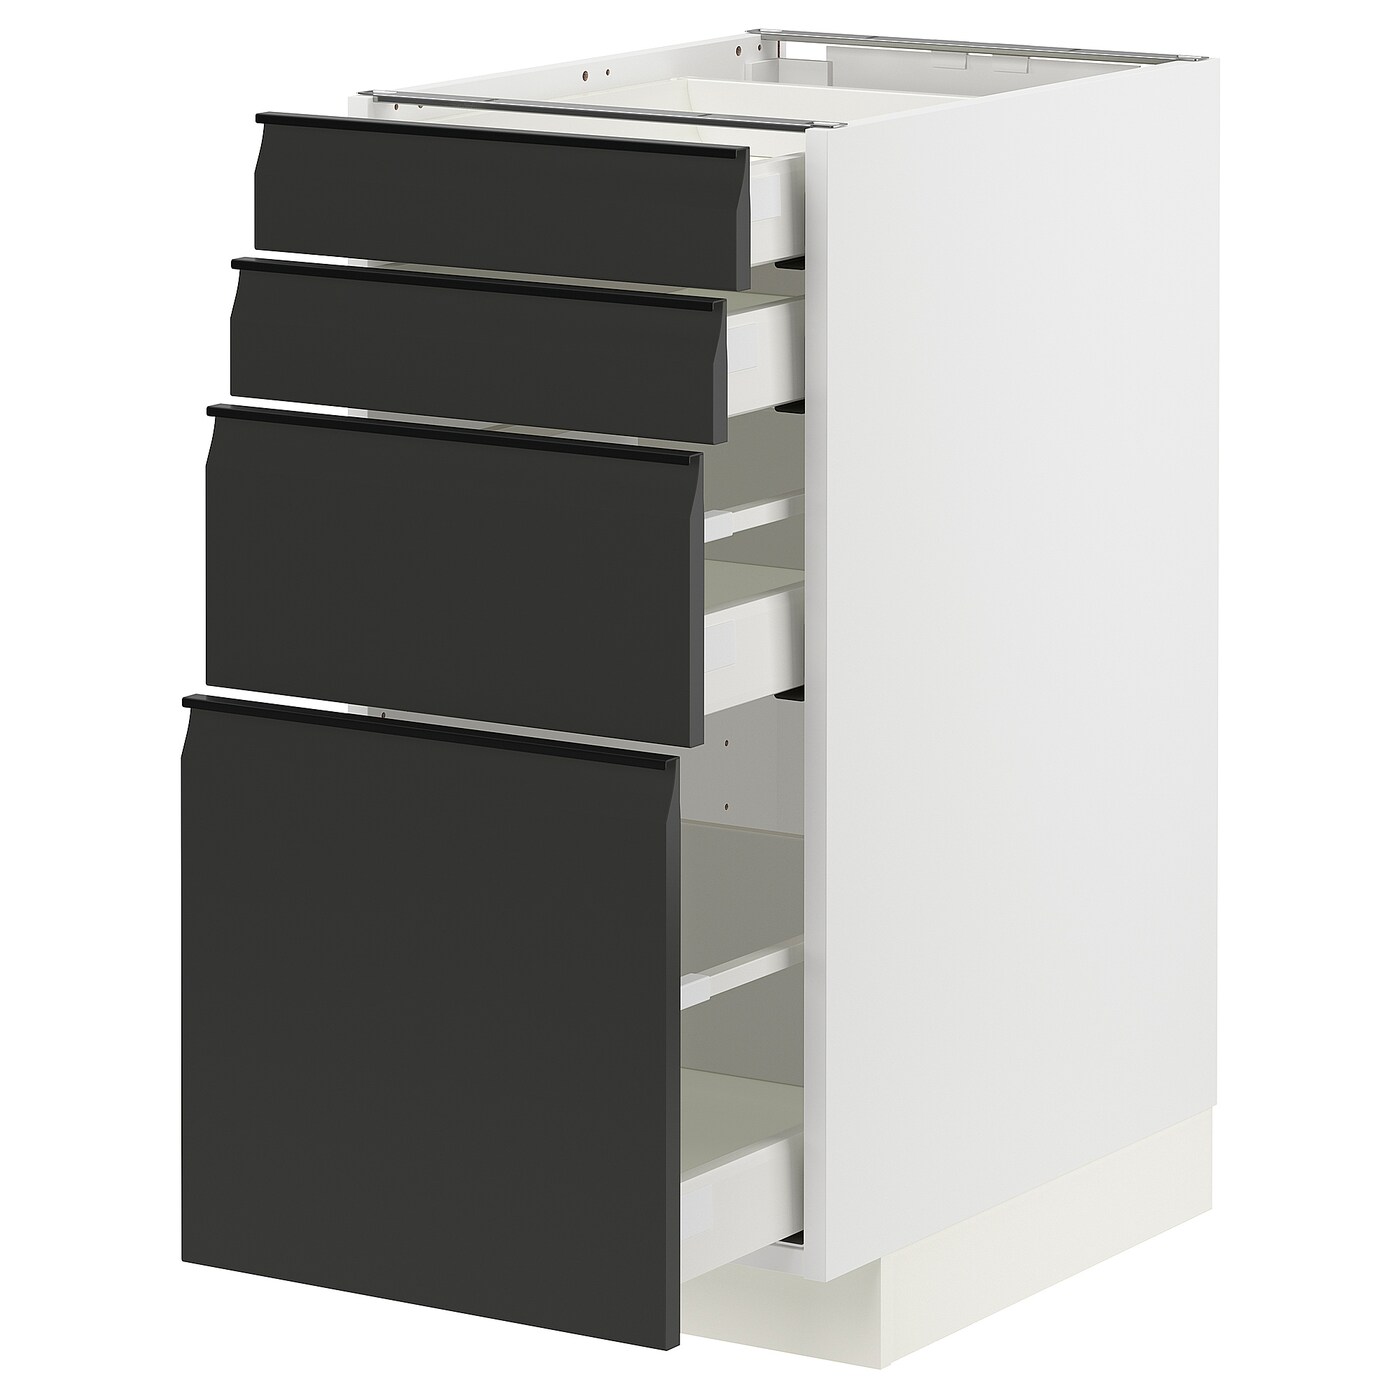 Напольный кухонный шкаф  - IKEA METOD MAXIMERA, 88x61,6x40см, белый/черный, МЕТОД МАКСИМЕРА ИКЕА